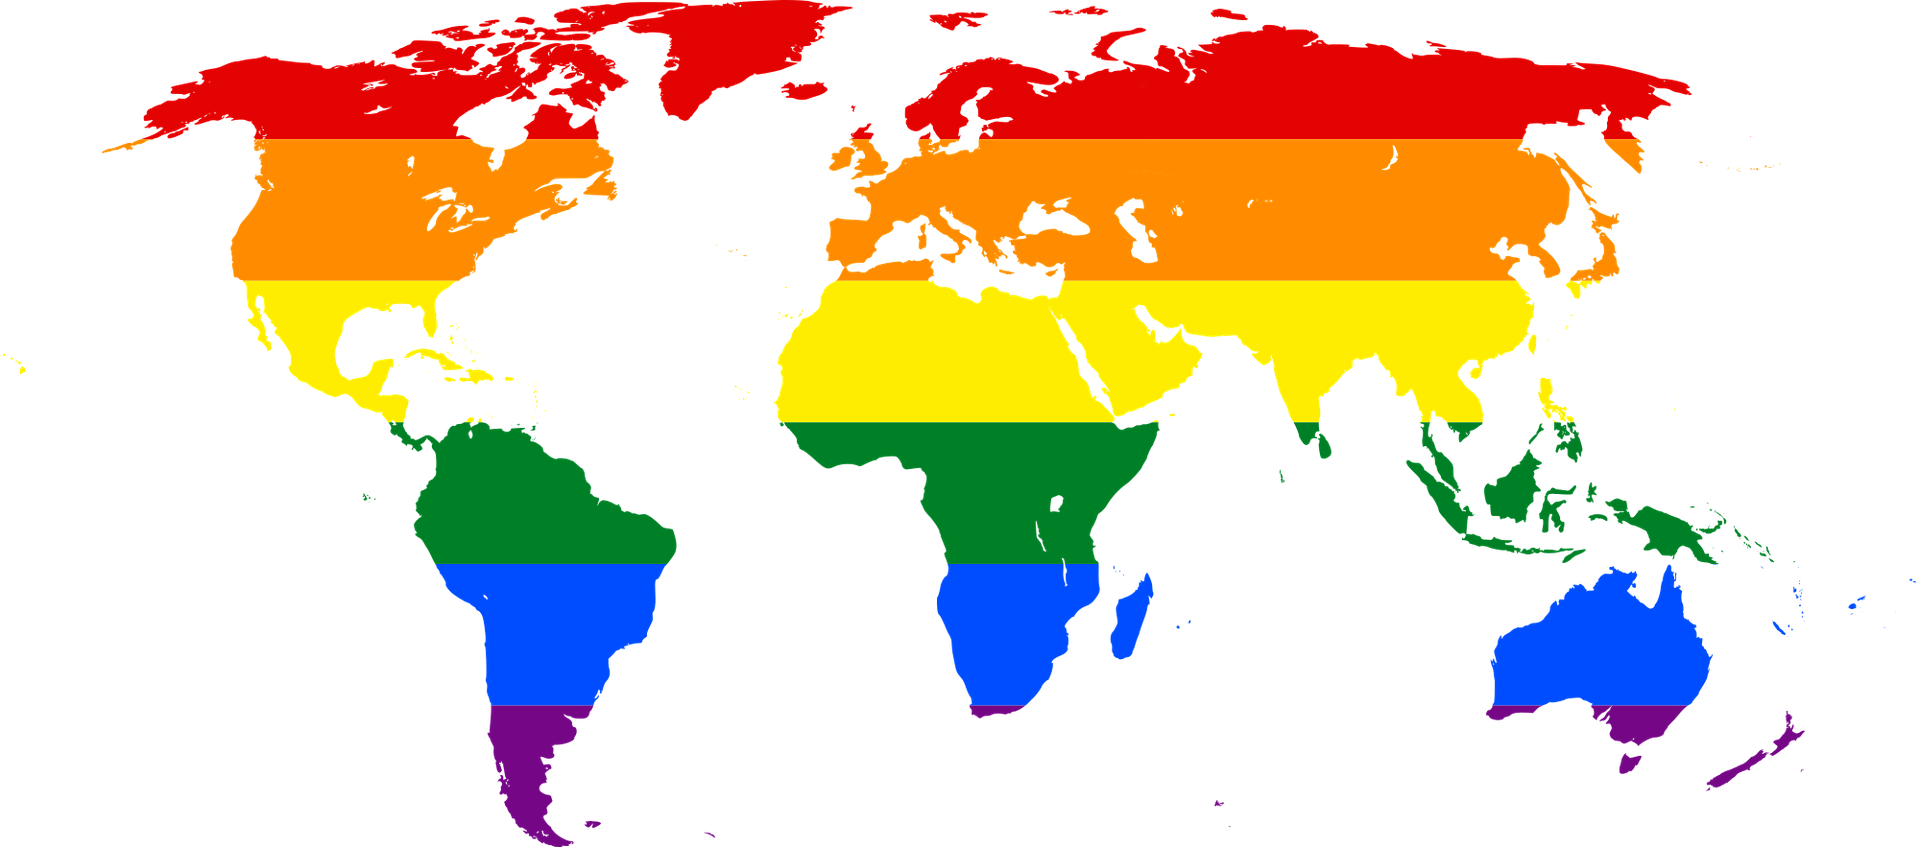 rainbow-world-map-g0c56dab9c_1920.png